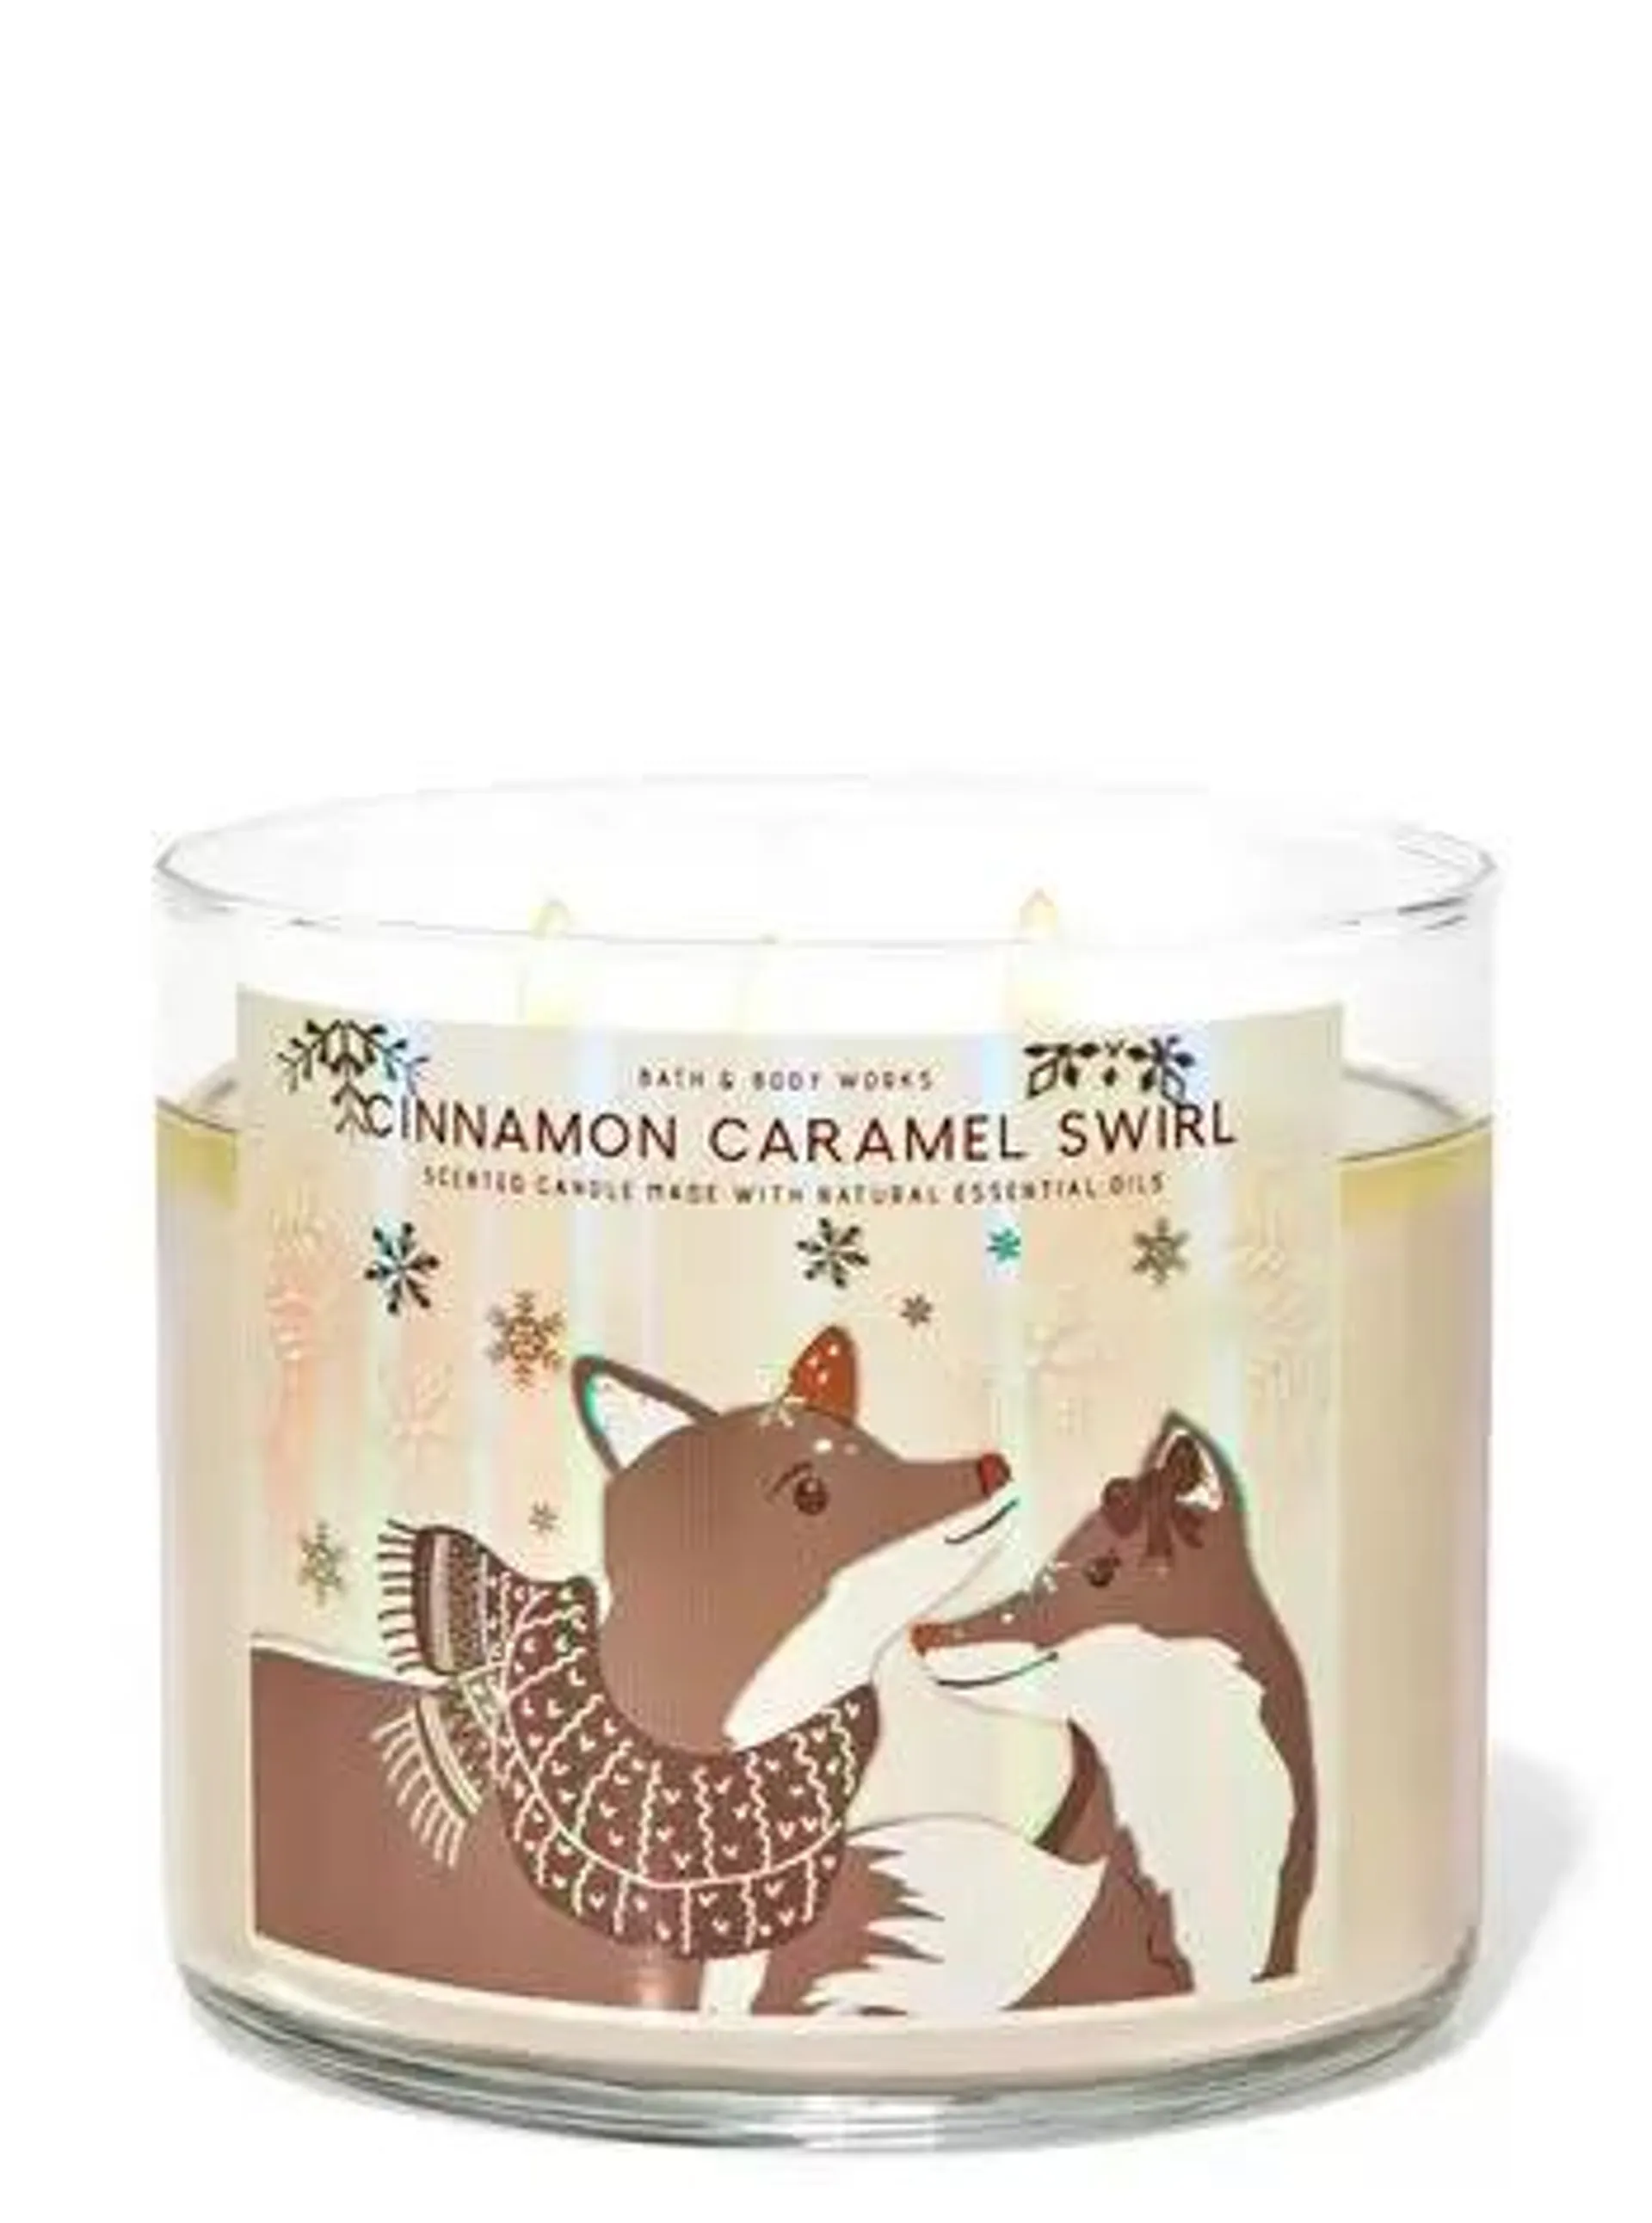 Cinnamon Caramel Swirl 3-Wick Candle